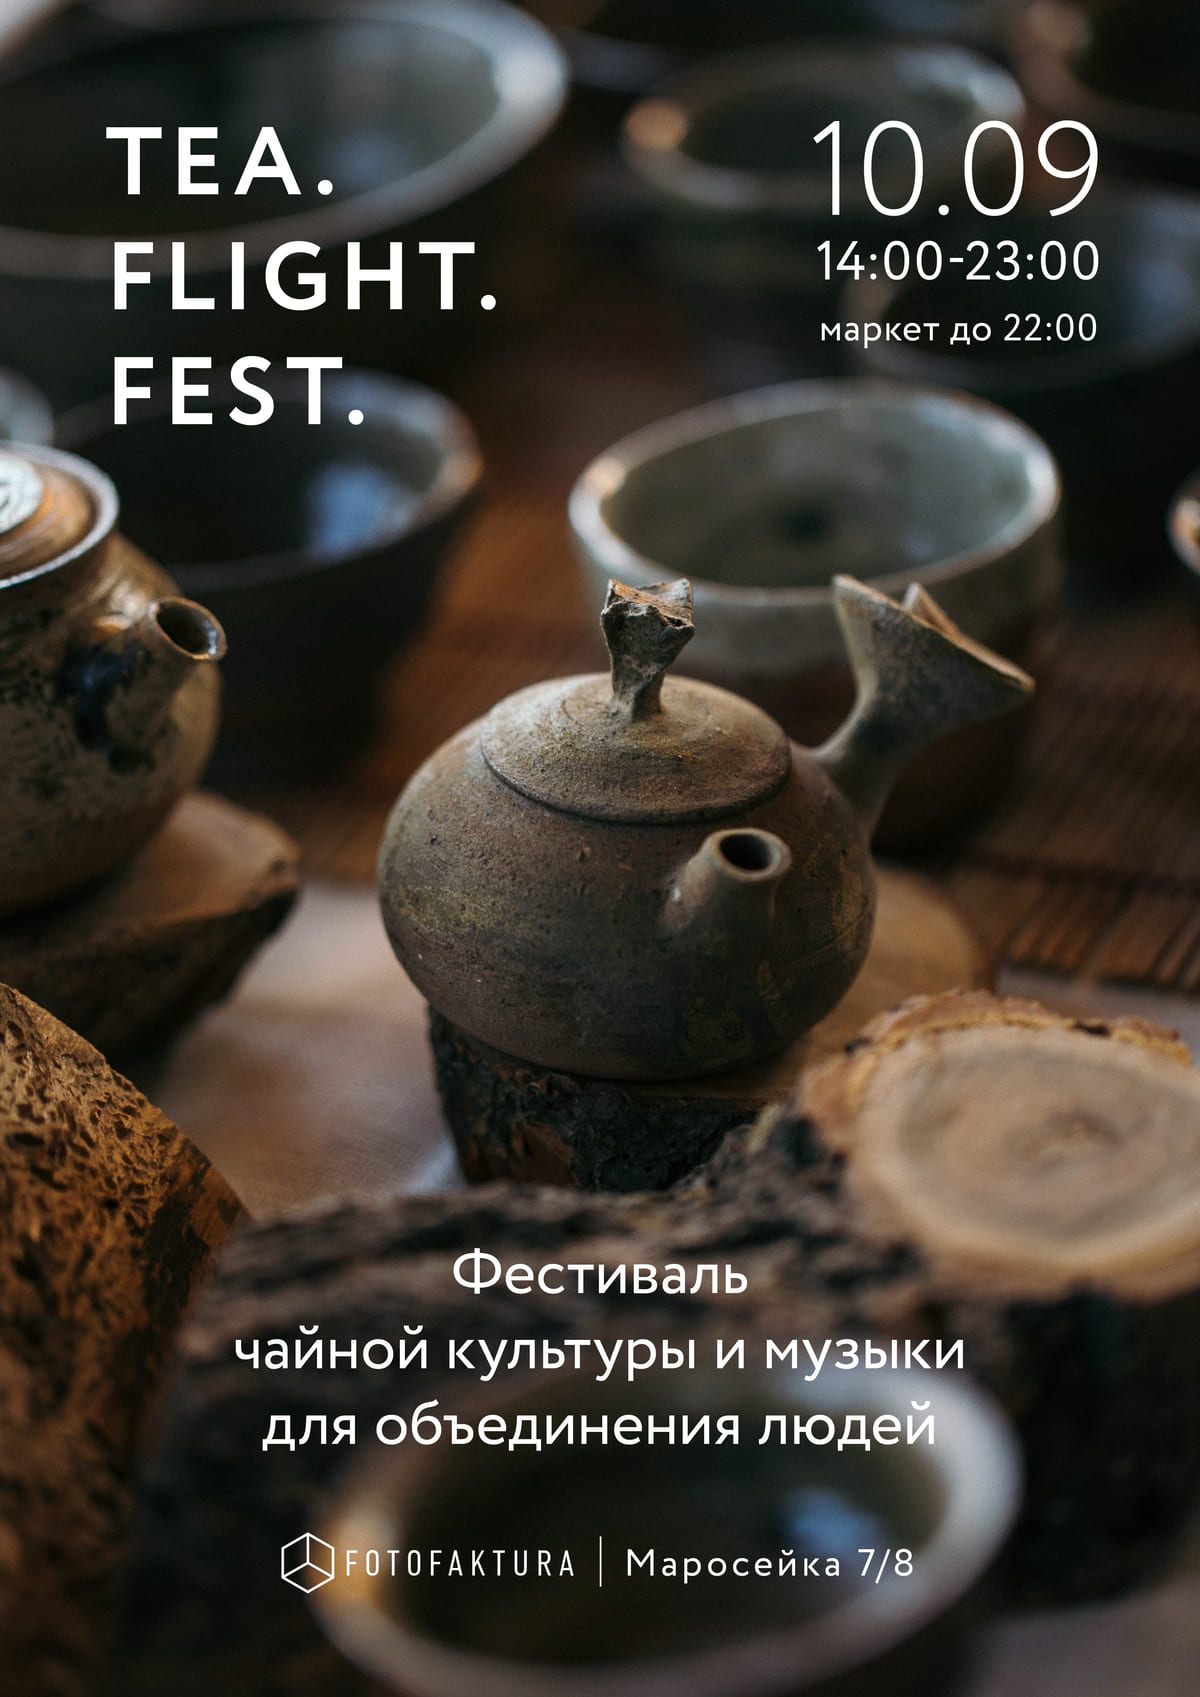 Фестиваль Tea flight fest